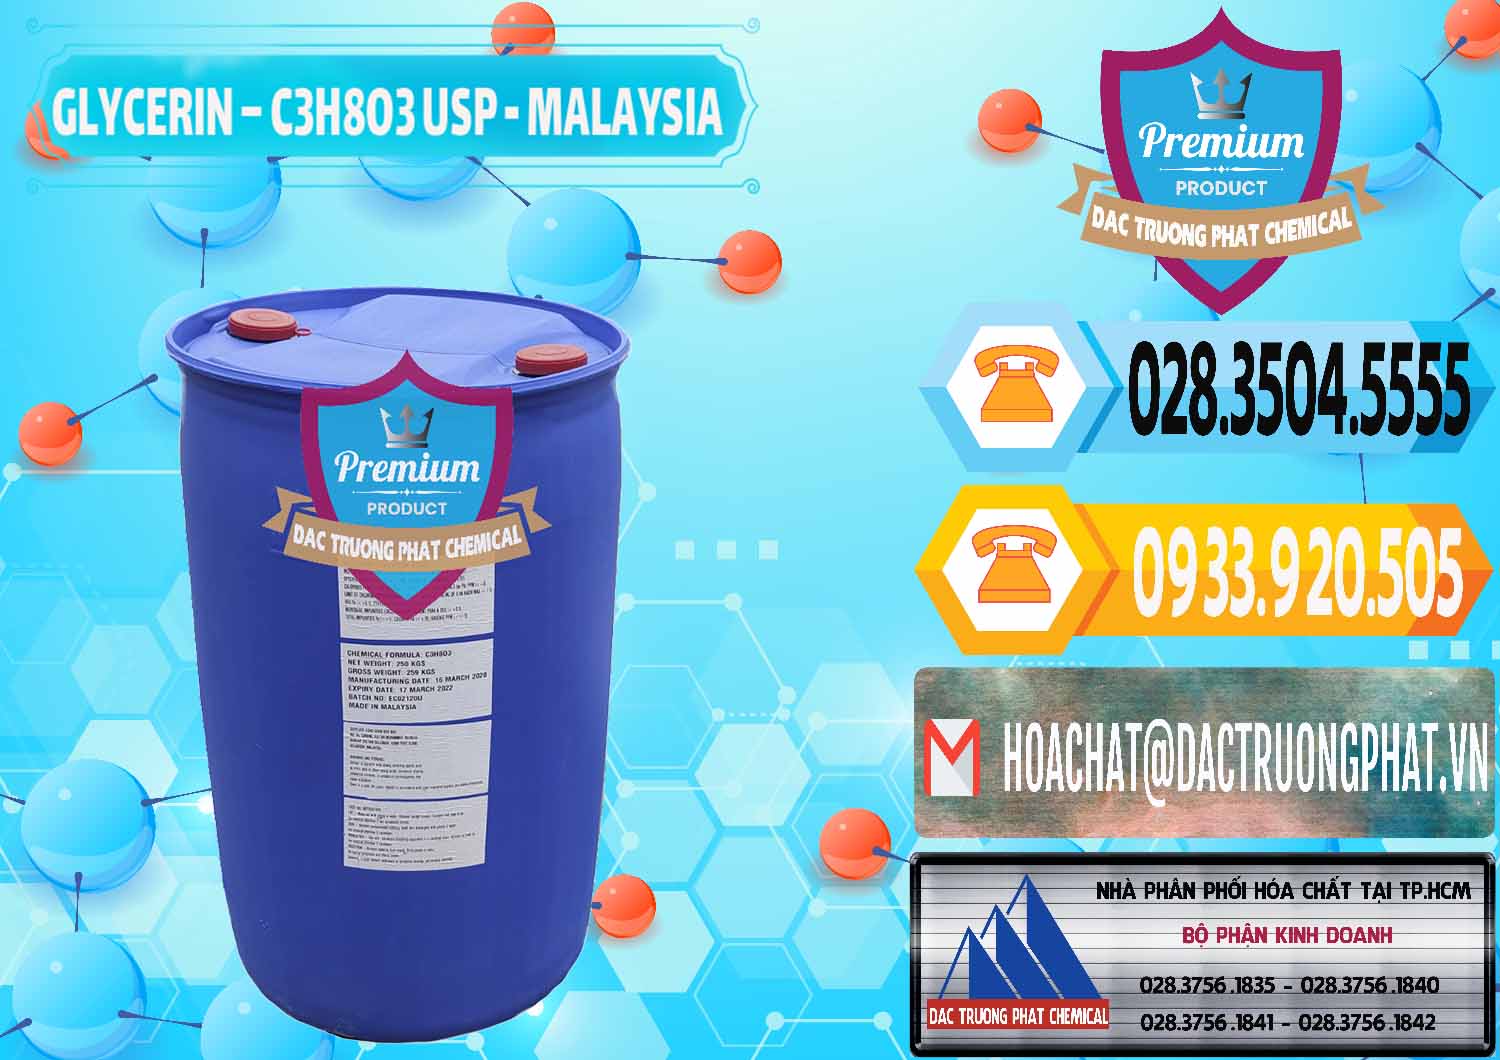 Nơi kinh doanh & bán Glycerin – C3H8O3 USP Malaysia - 0233 - Chuyên cung cấp _ phân phối hóa chất tại TP.HCM - hoachattayrua.net